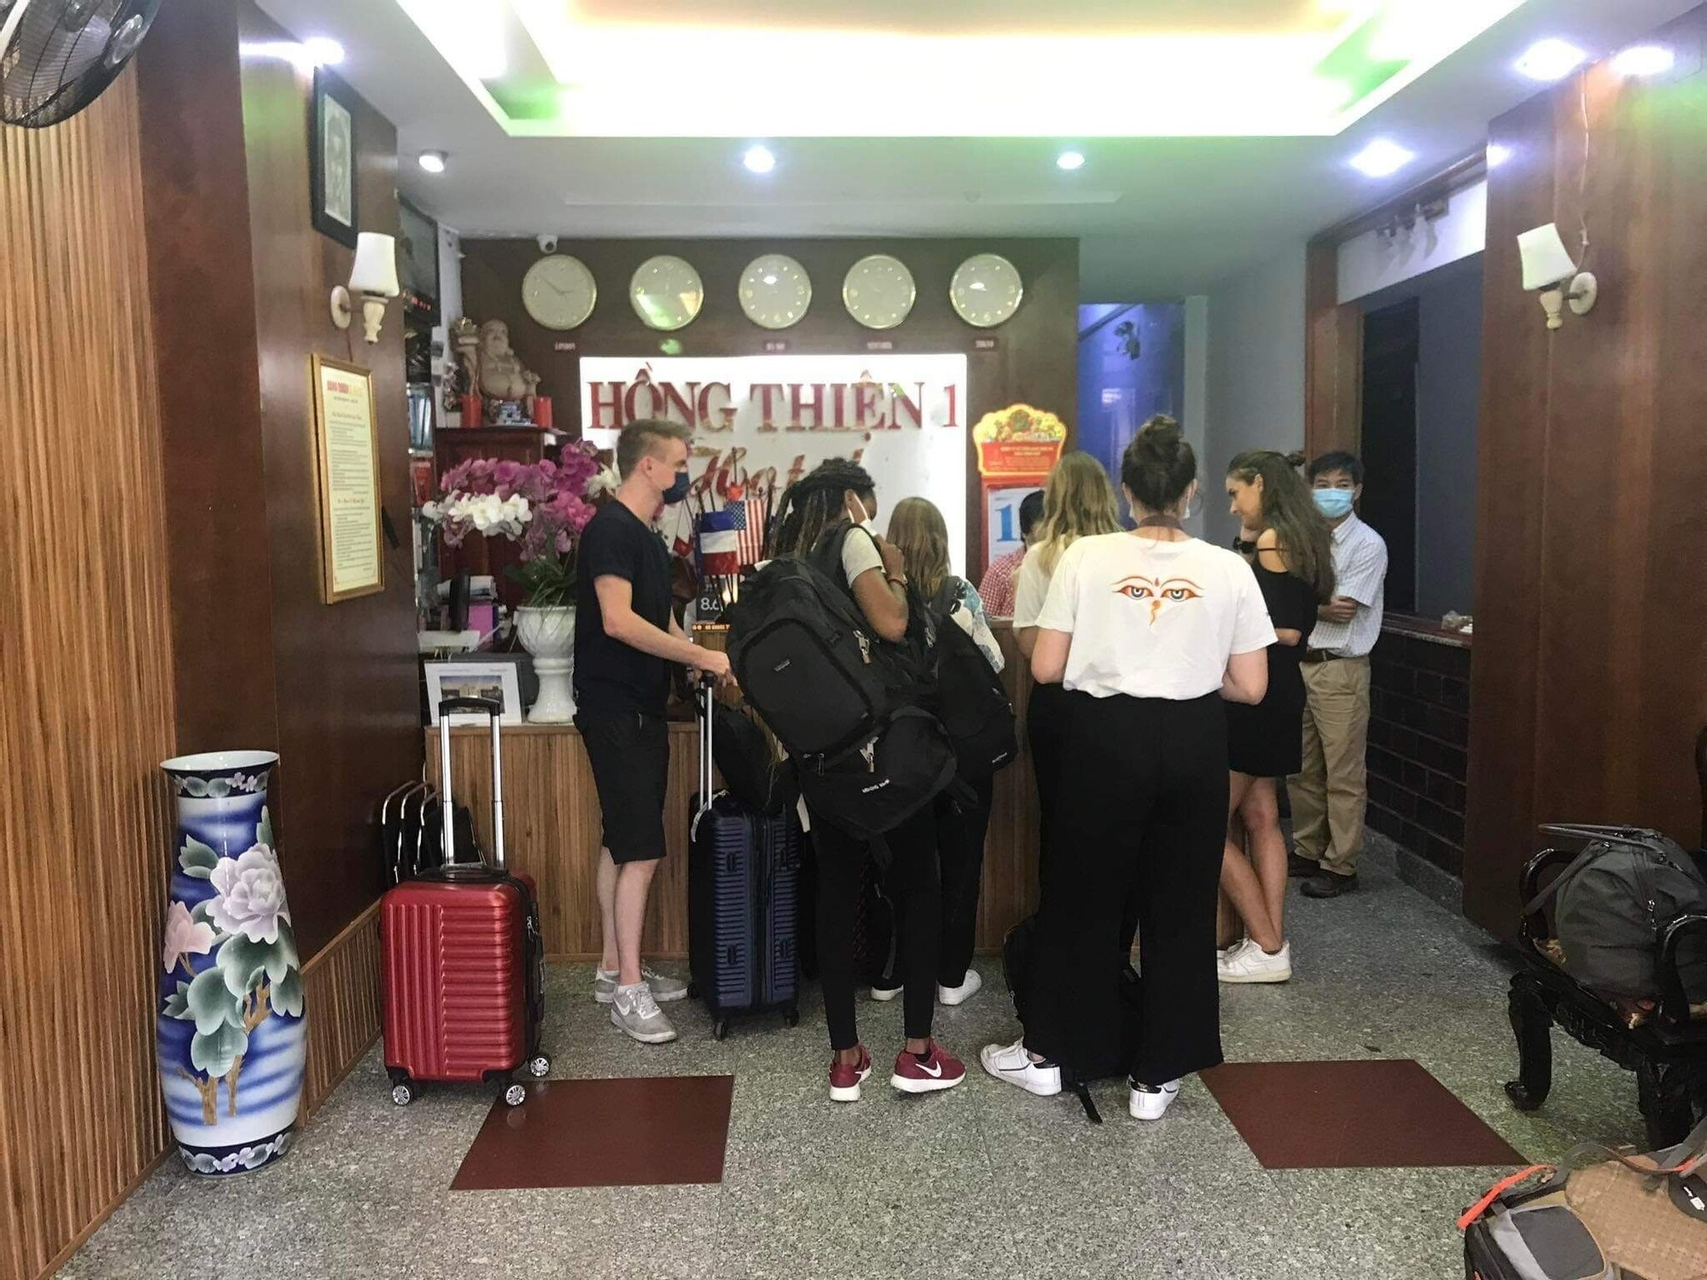 Public Area, Hong Thien 1 Hotel, Huế